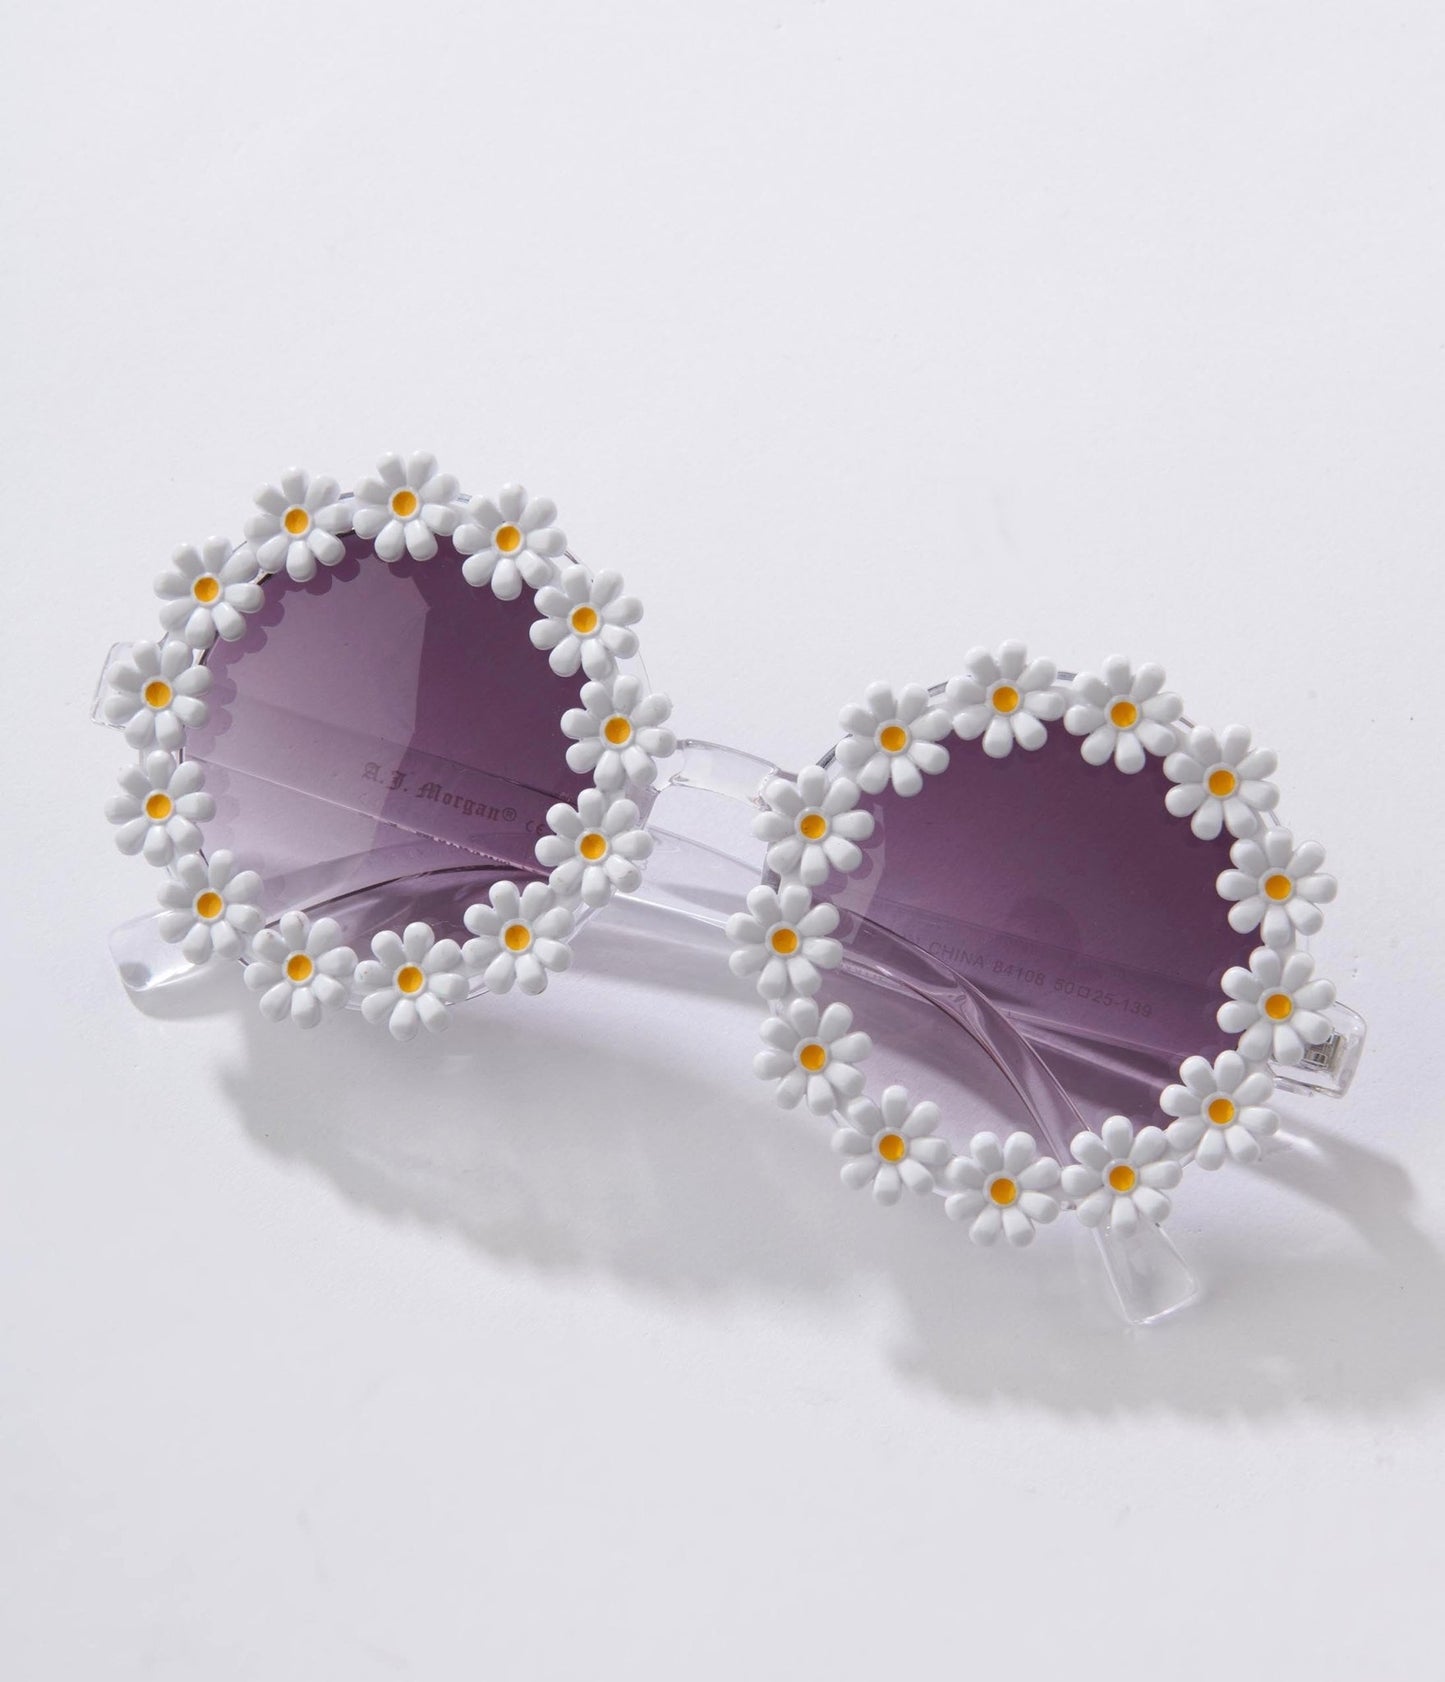 White Daisy Round Sunglasses - Unique Vintage - Womens, ACCESSORIES, SUNGLASSES